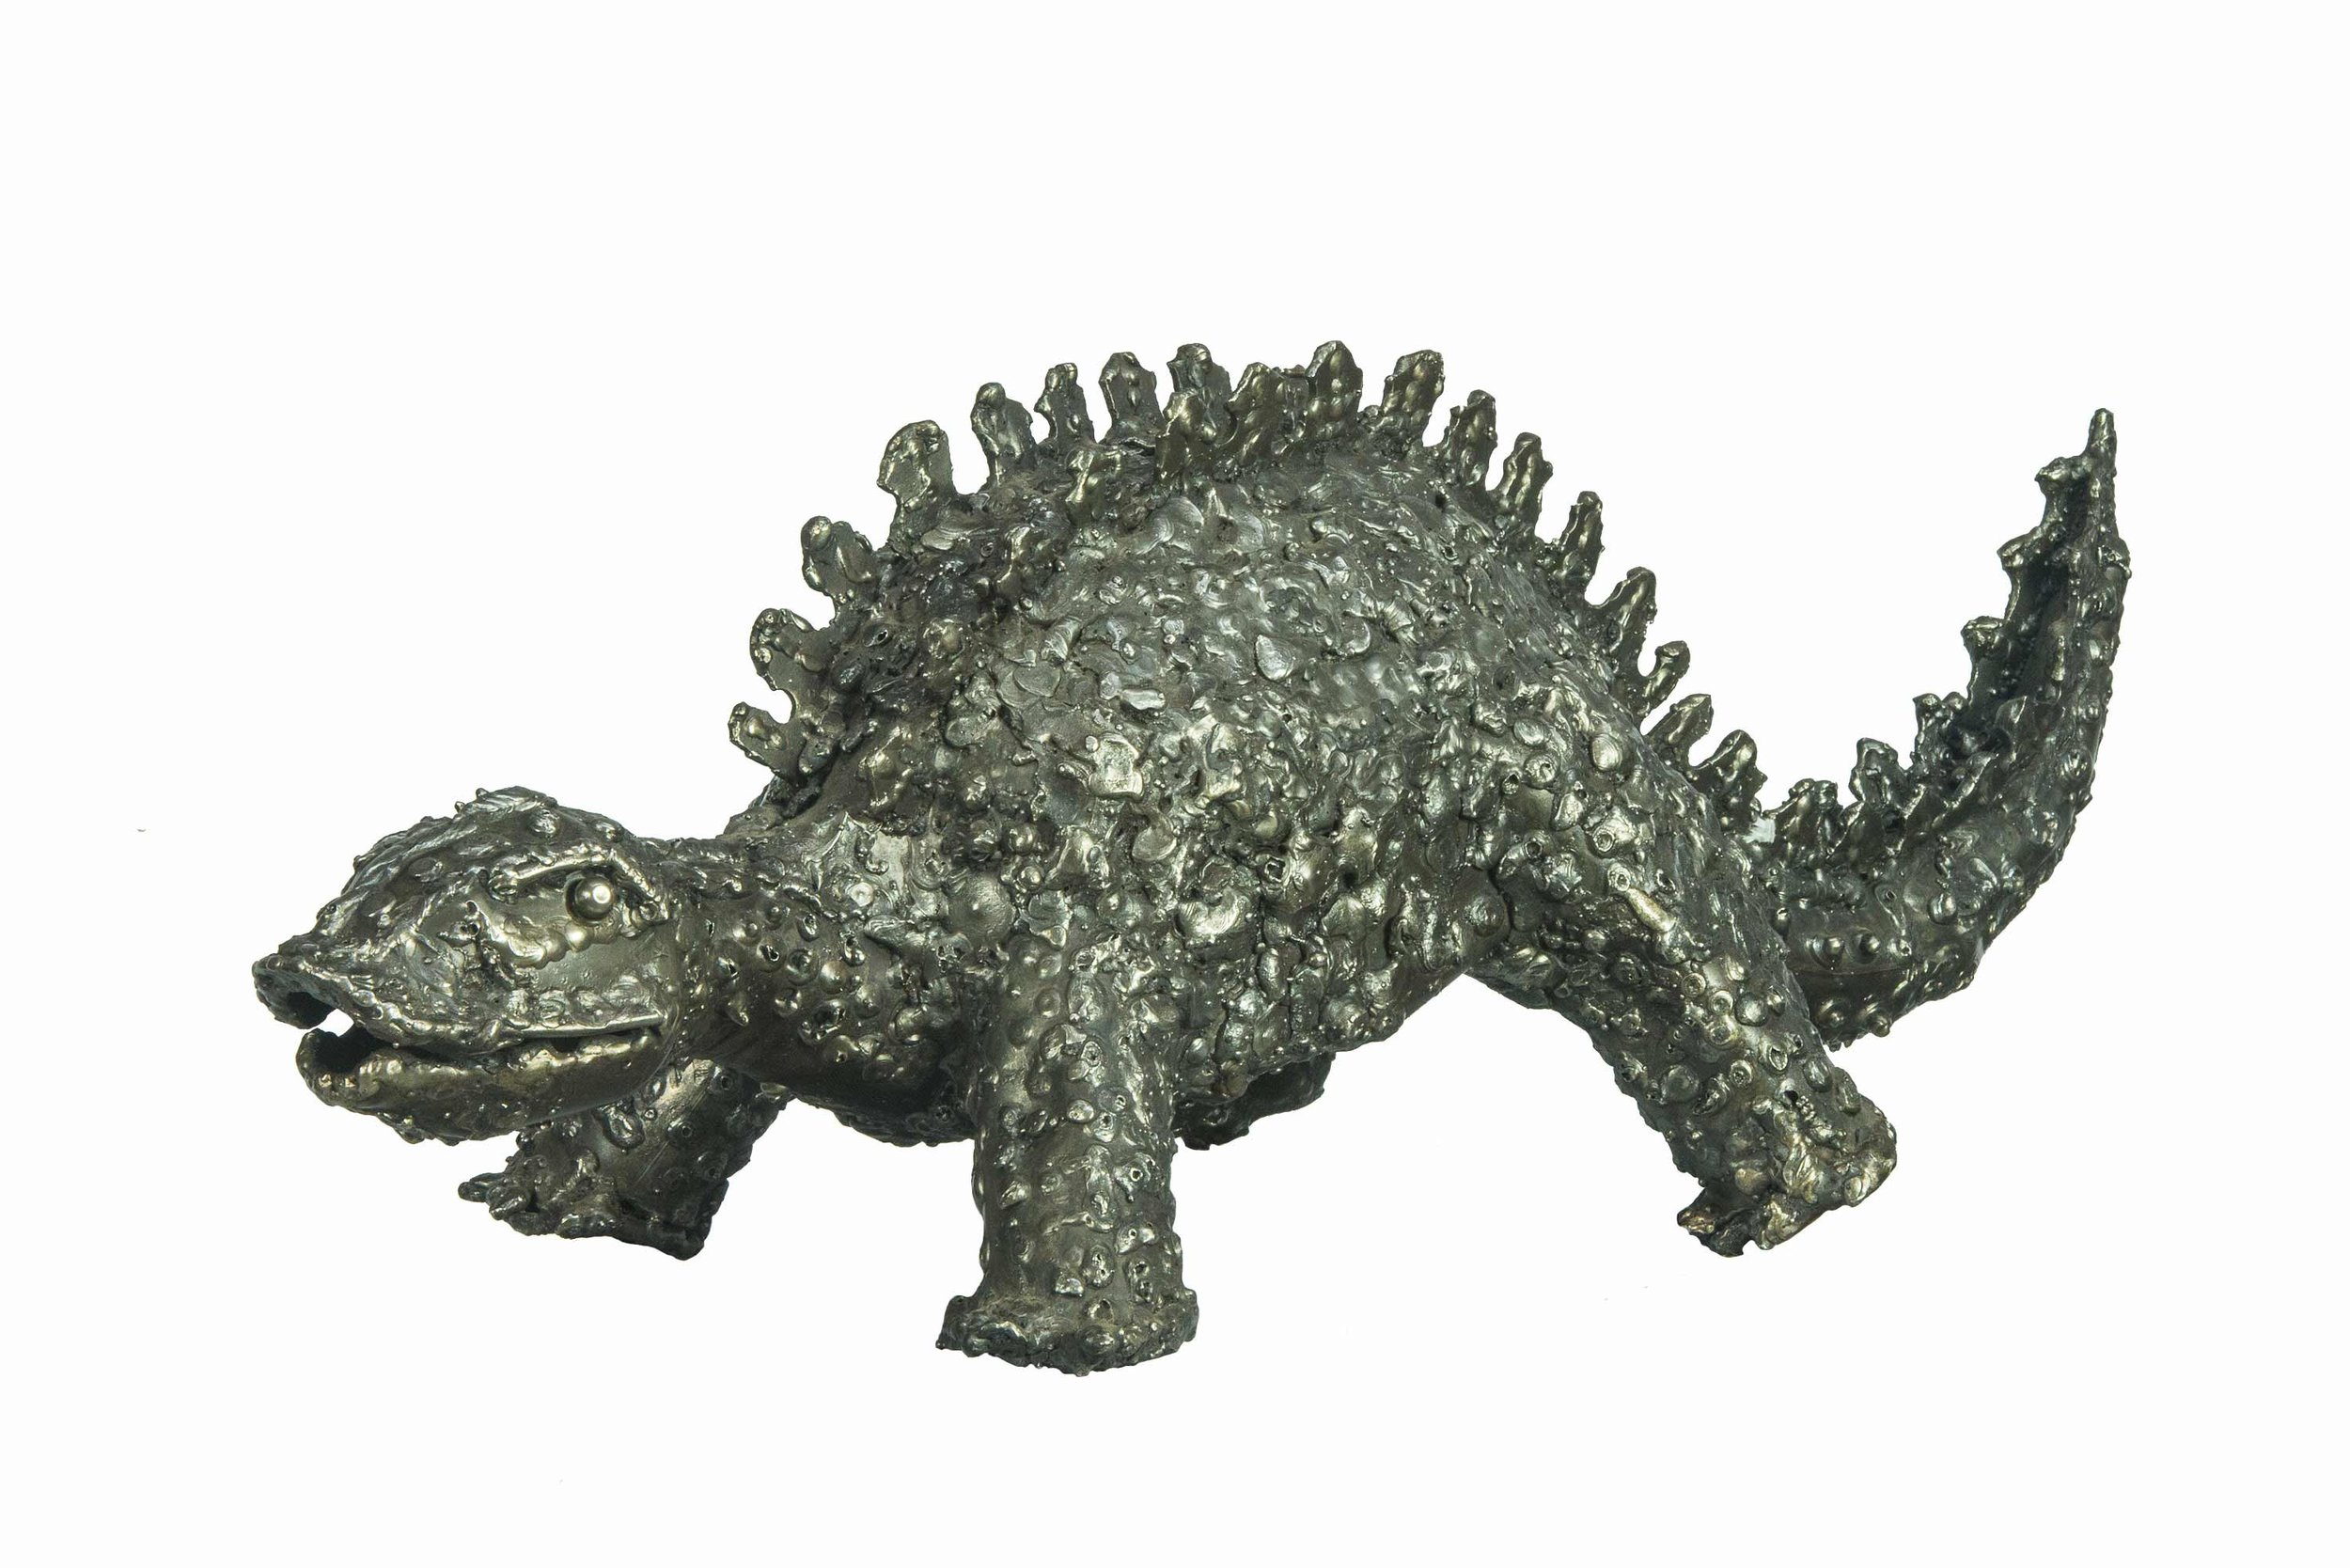 Stegosaurus - 8.75"H x 24.5"W